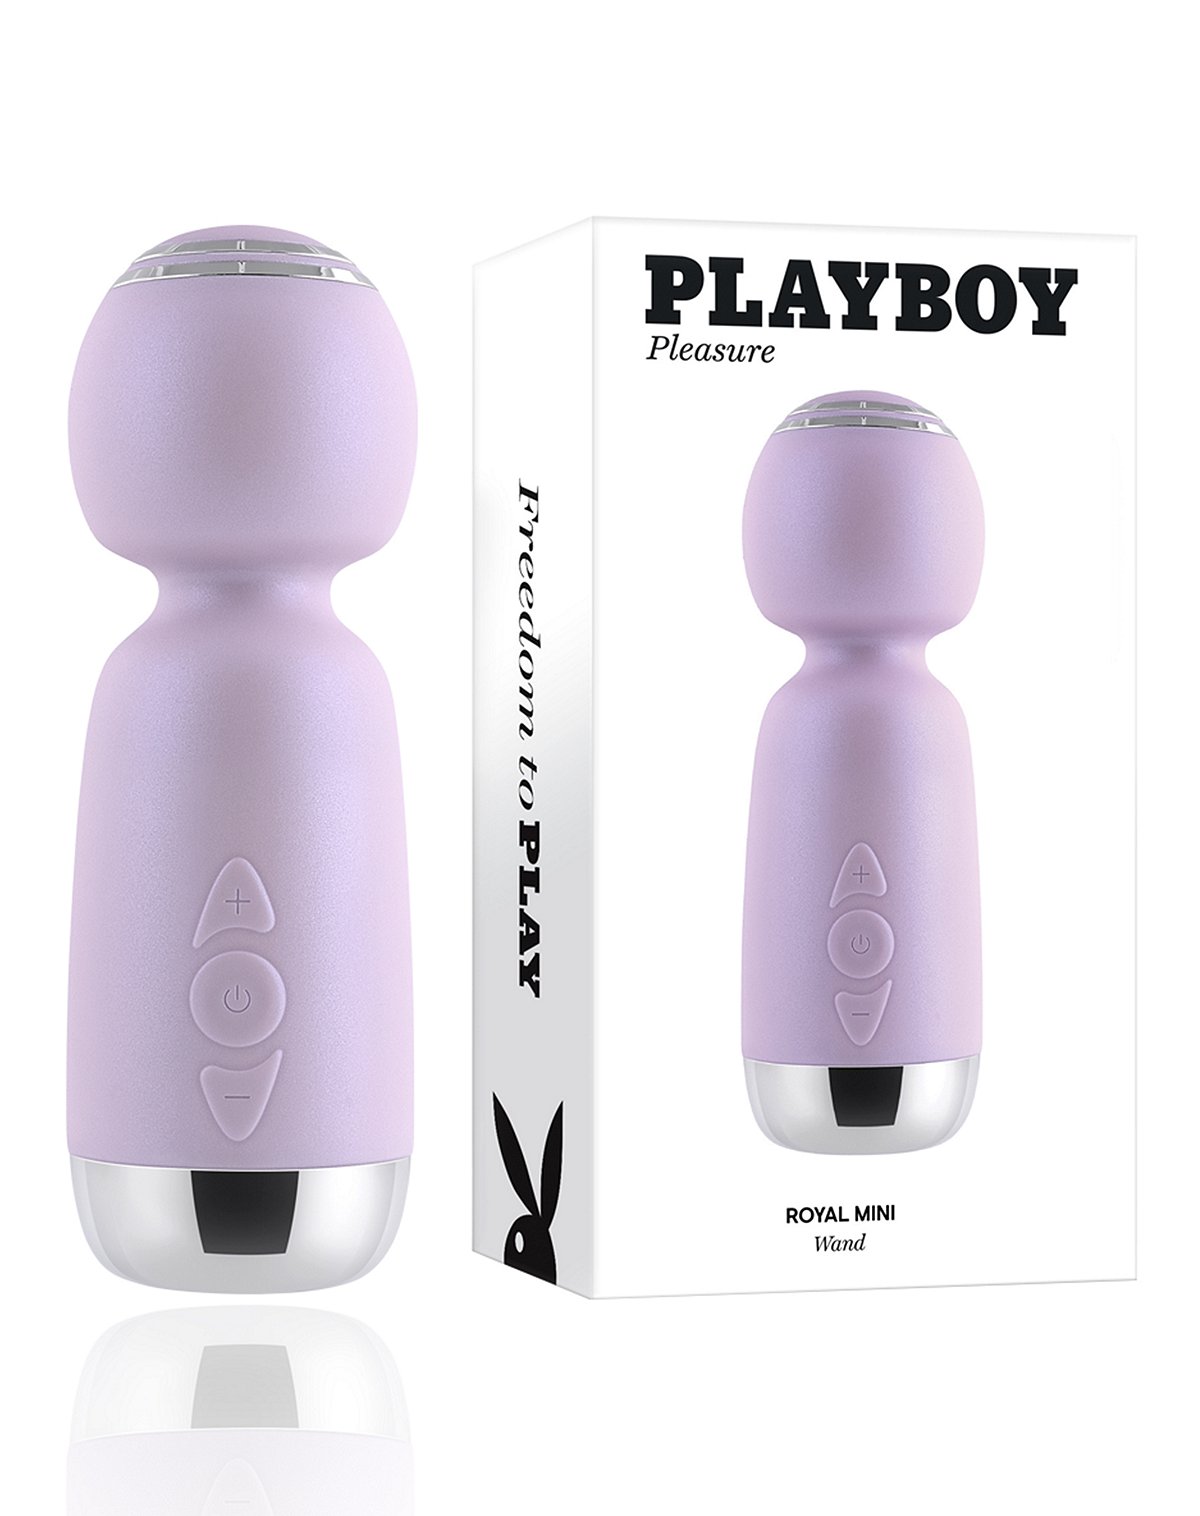 Playboy Pleasure Royal Mini Wand Massager